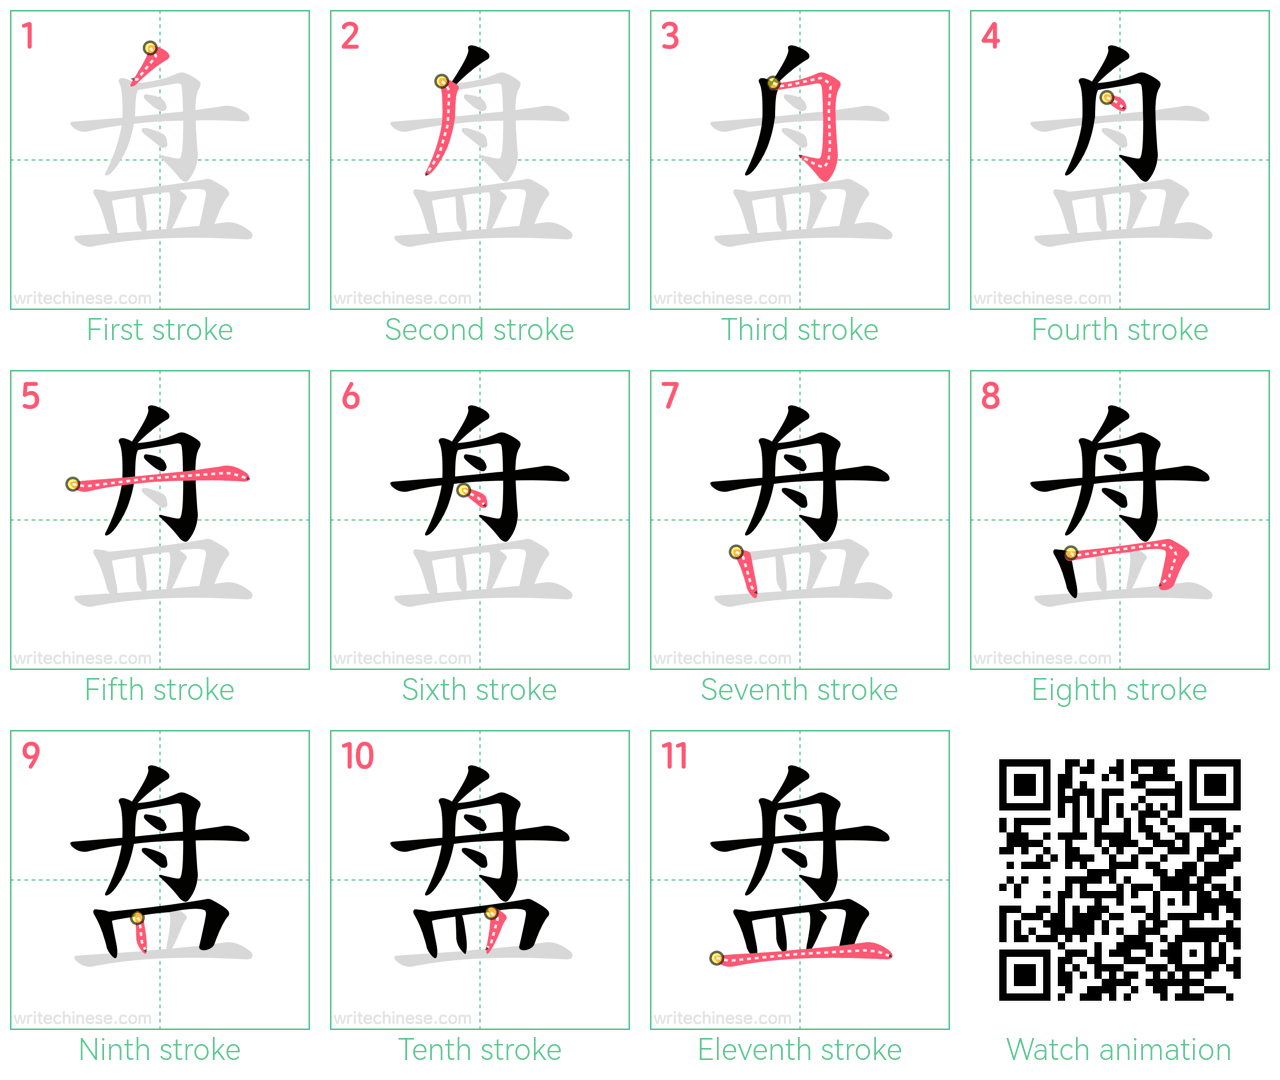 盘 step-by-step stroke order diagrams